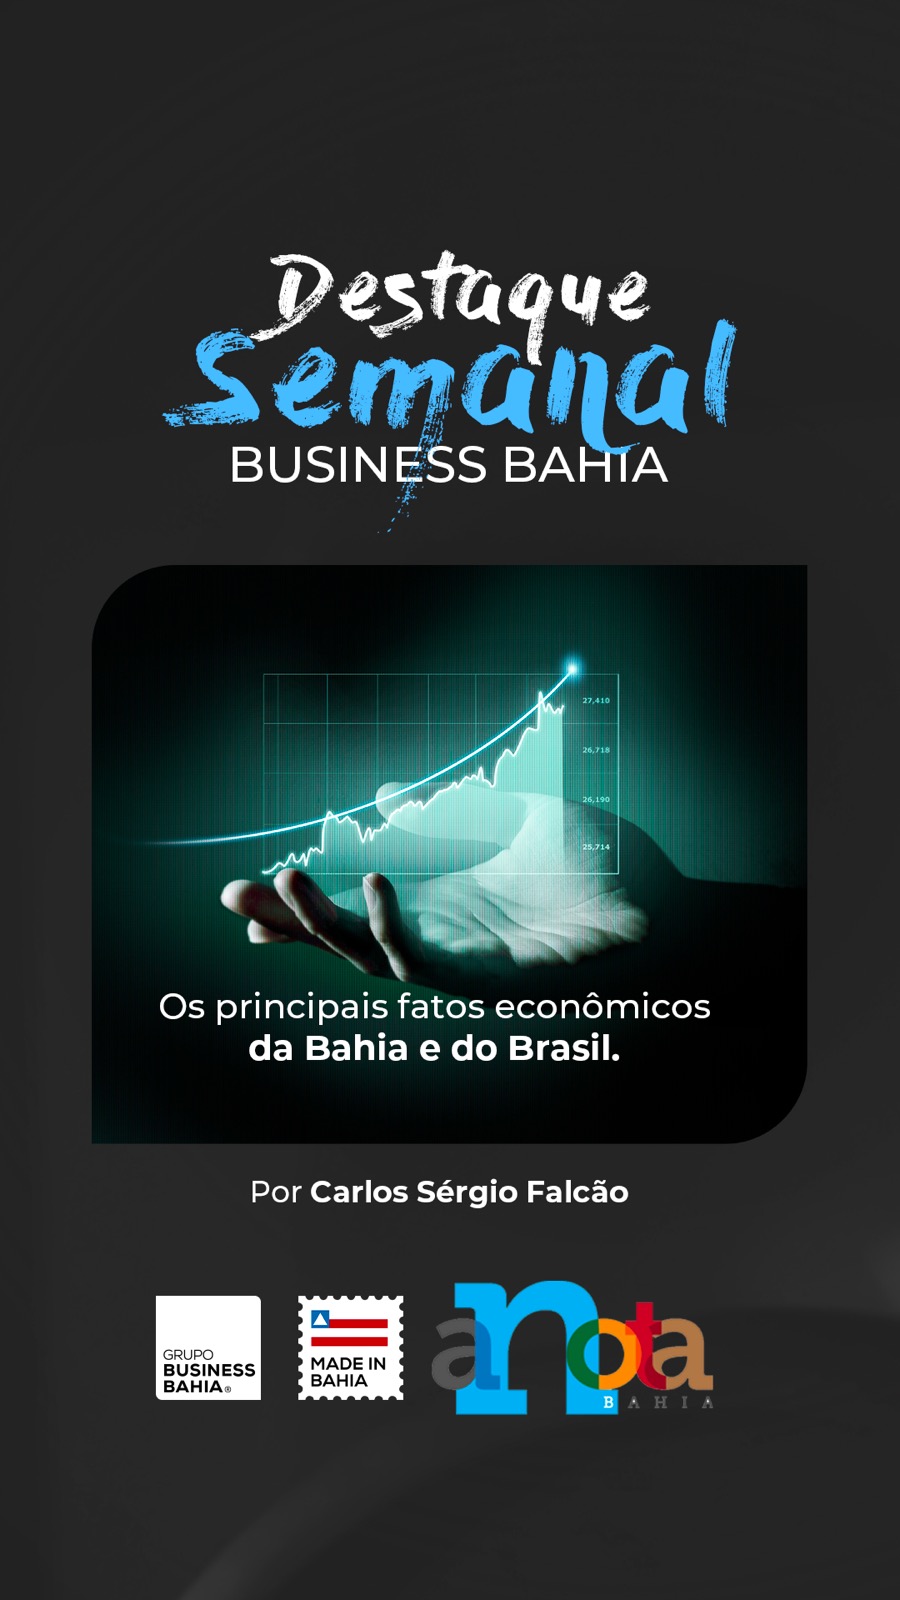 Destaque Business Bahia